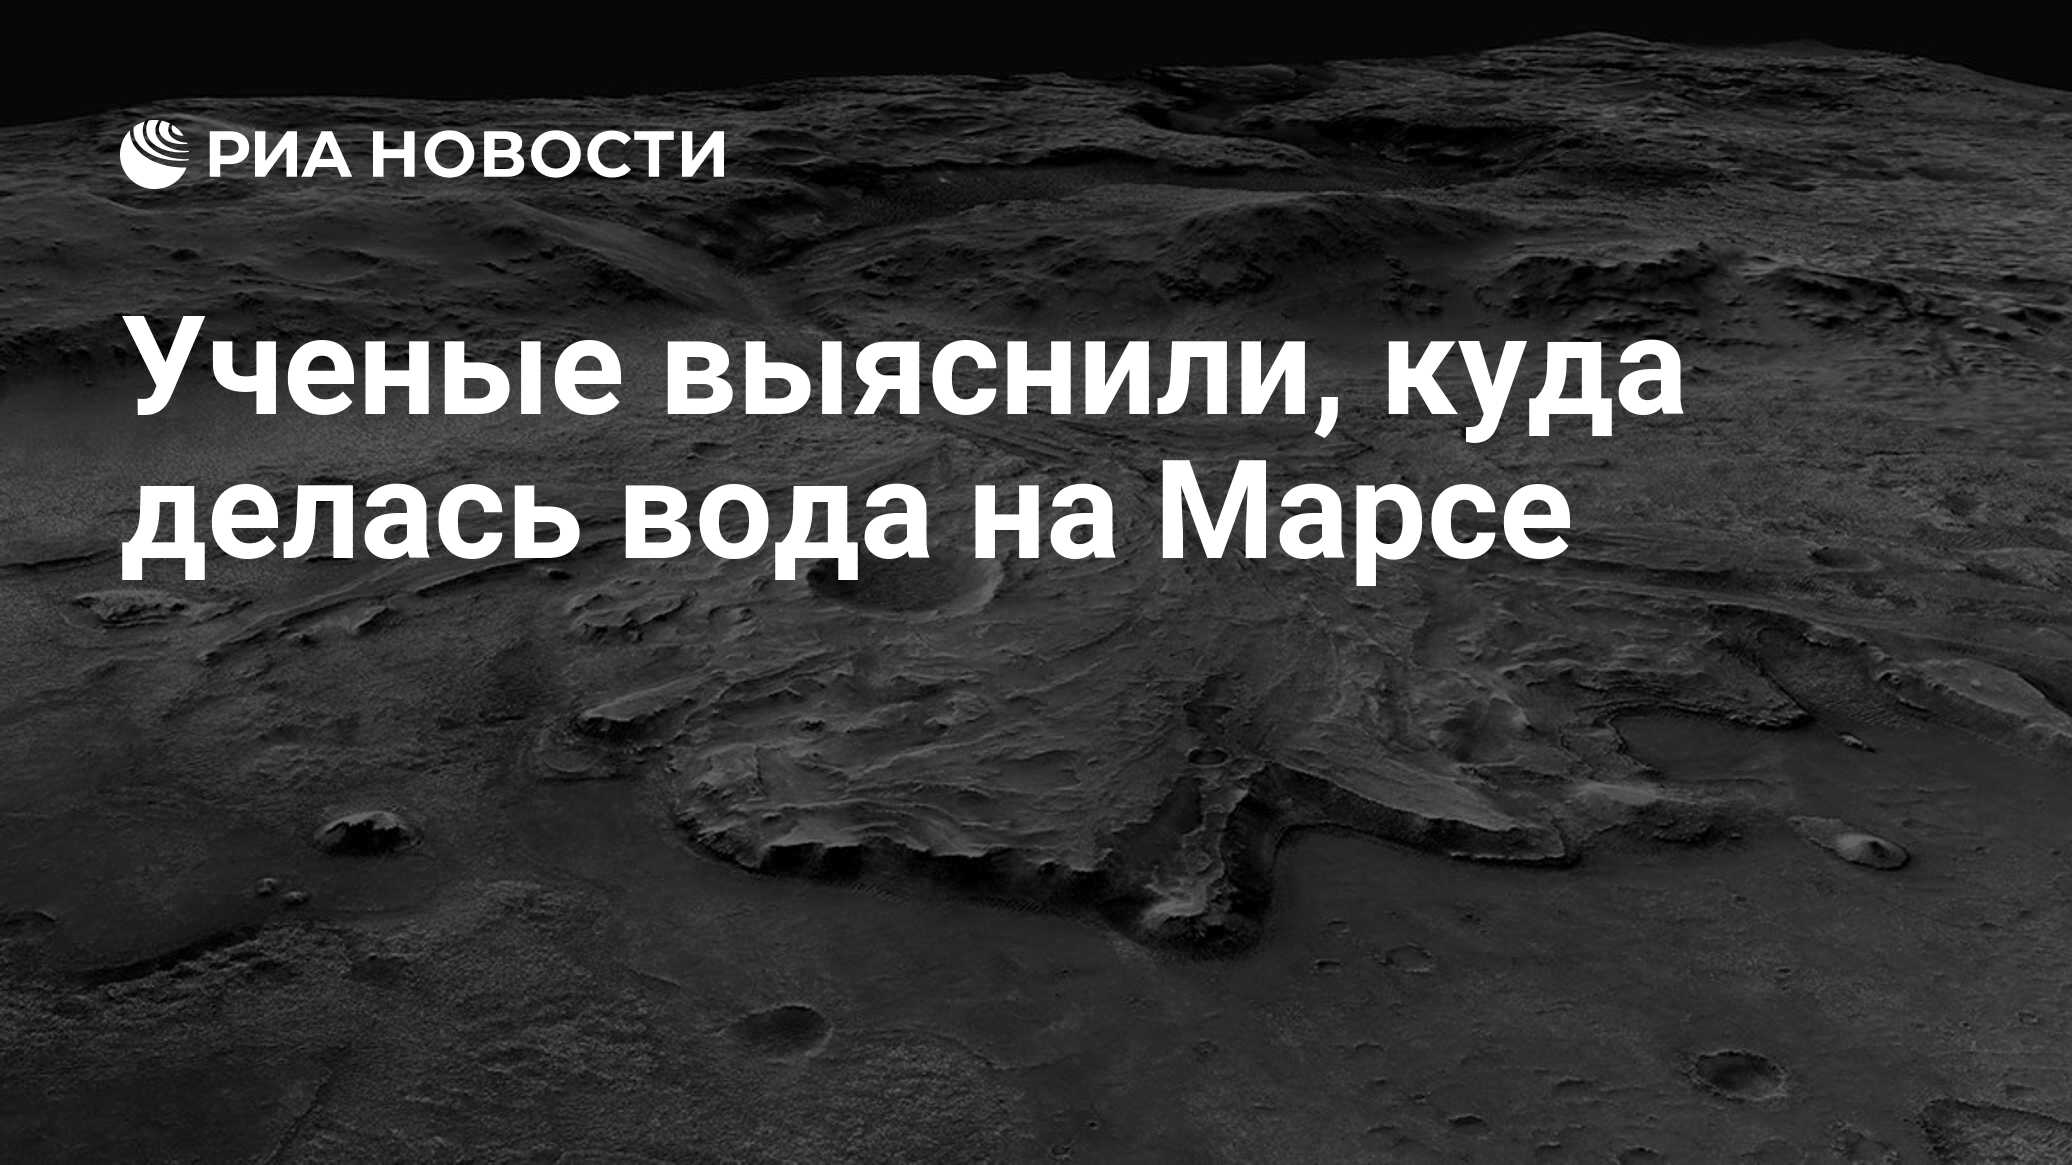 Ученые выяснили, куда делась вода на Марсе - РИА Новости, 18.03.2021